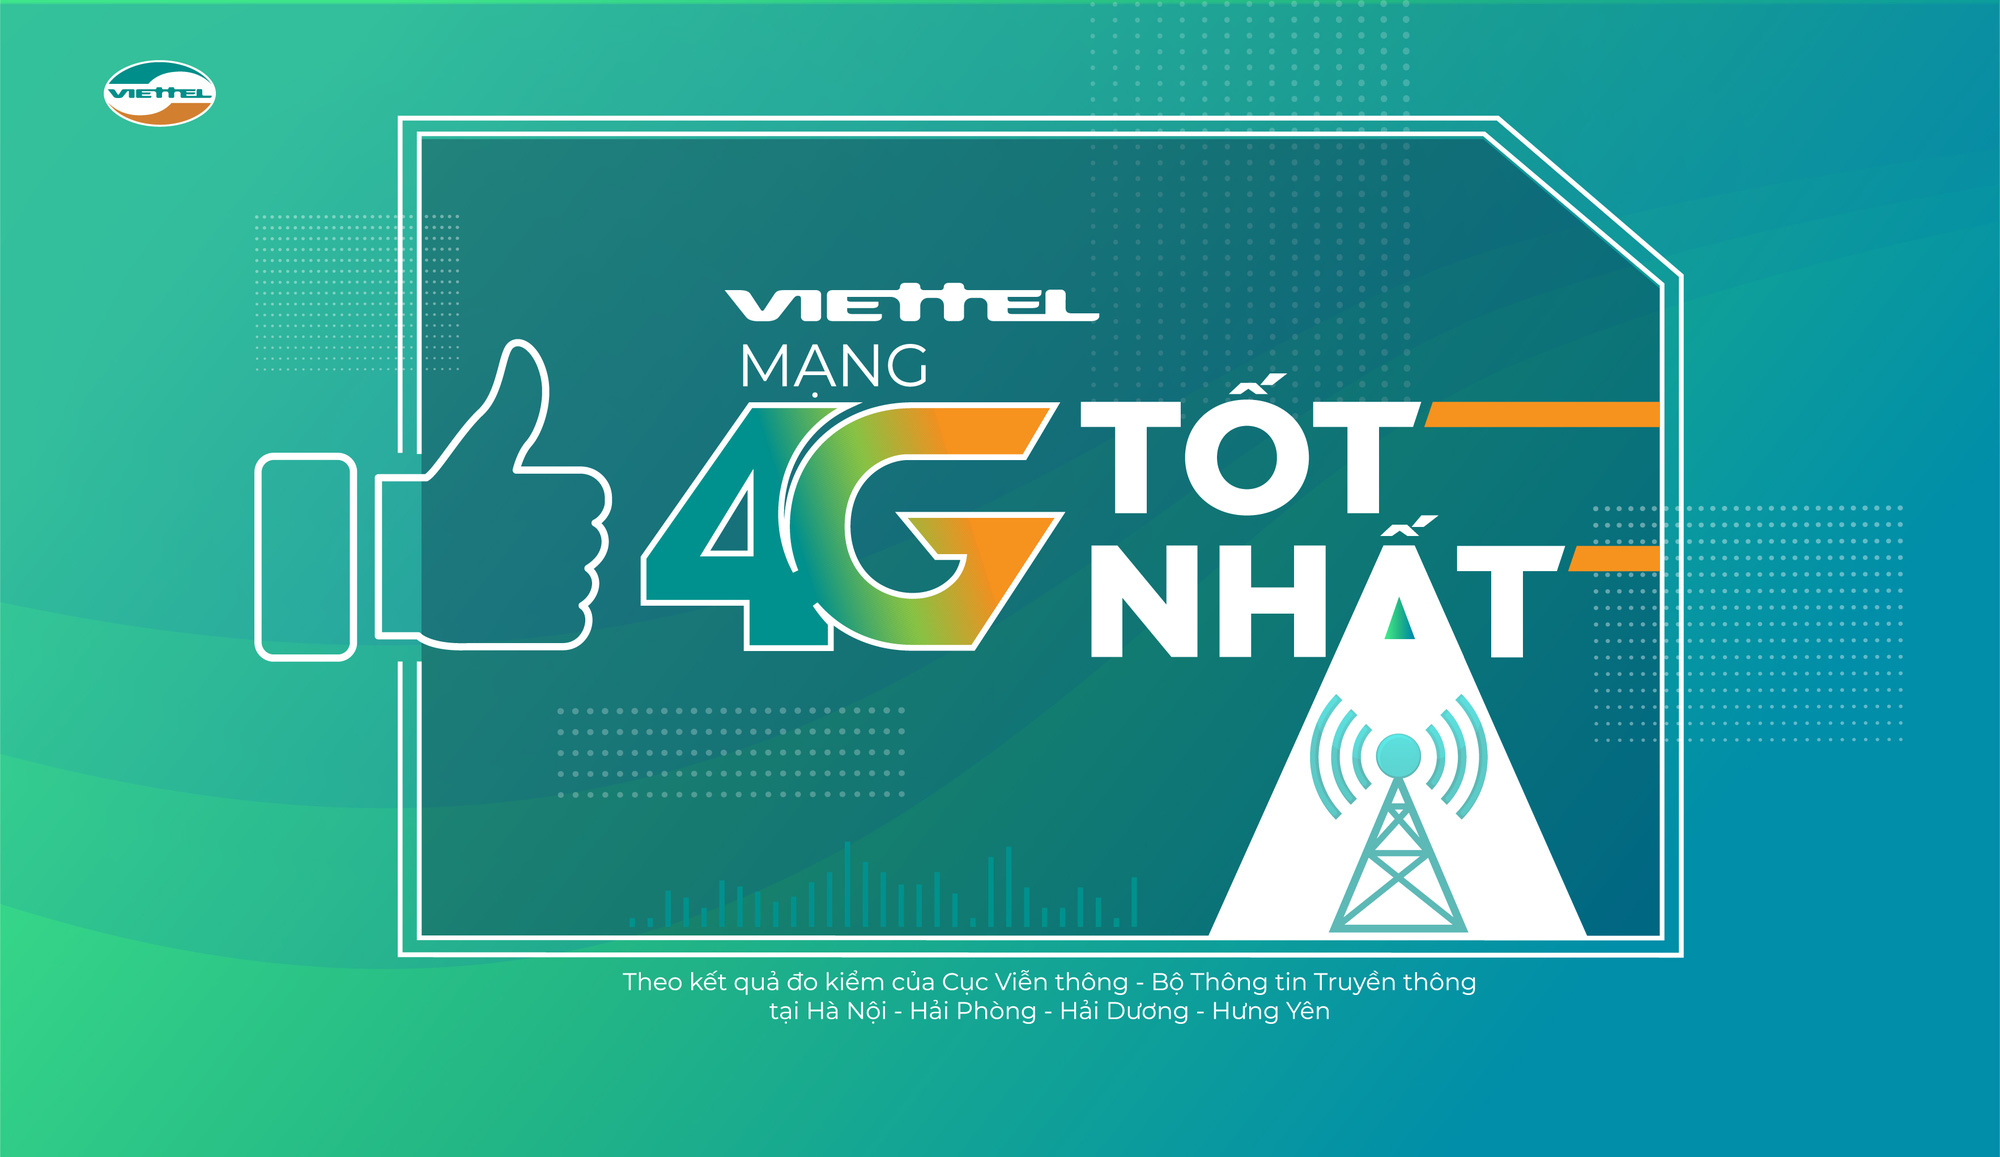 Tốc độ 4G Viettel hiện đang là một trong những mạng di động nhanh nhất tại Việt Nam. Nếu bạn muốn tìm hiểu thêm về tốc độ internet của Viettel, hãy xem ngay hình ảnh liên quan đến chủ đề này!